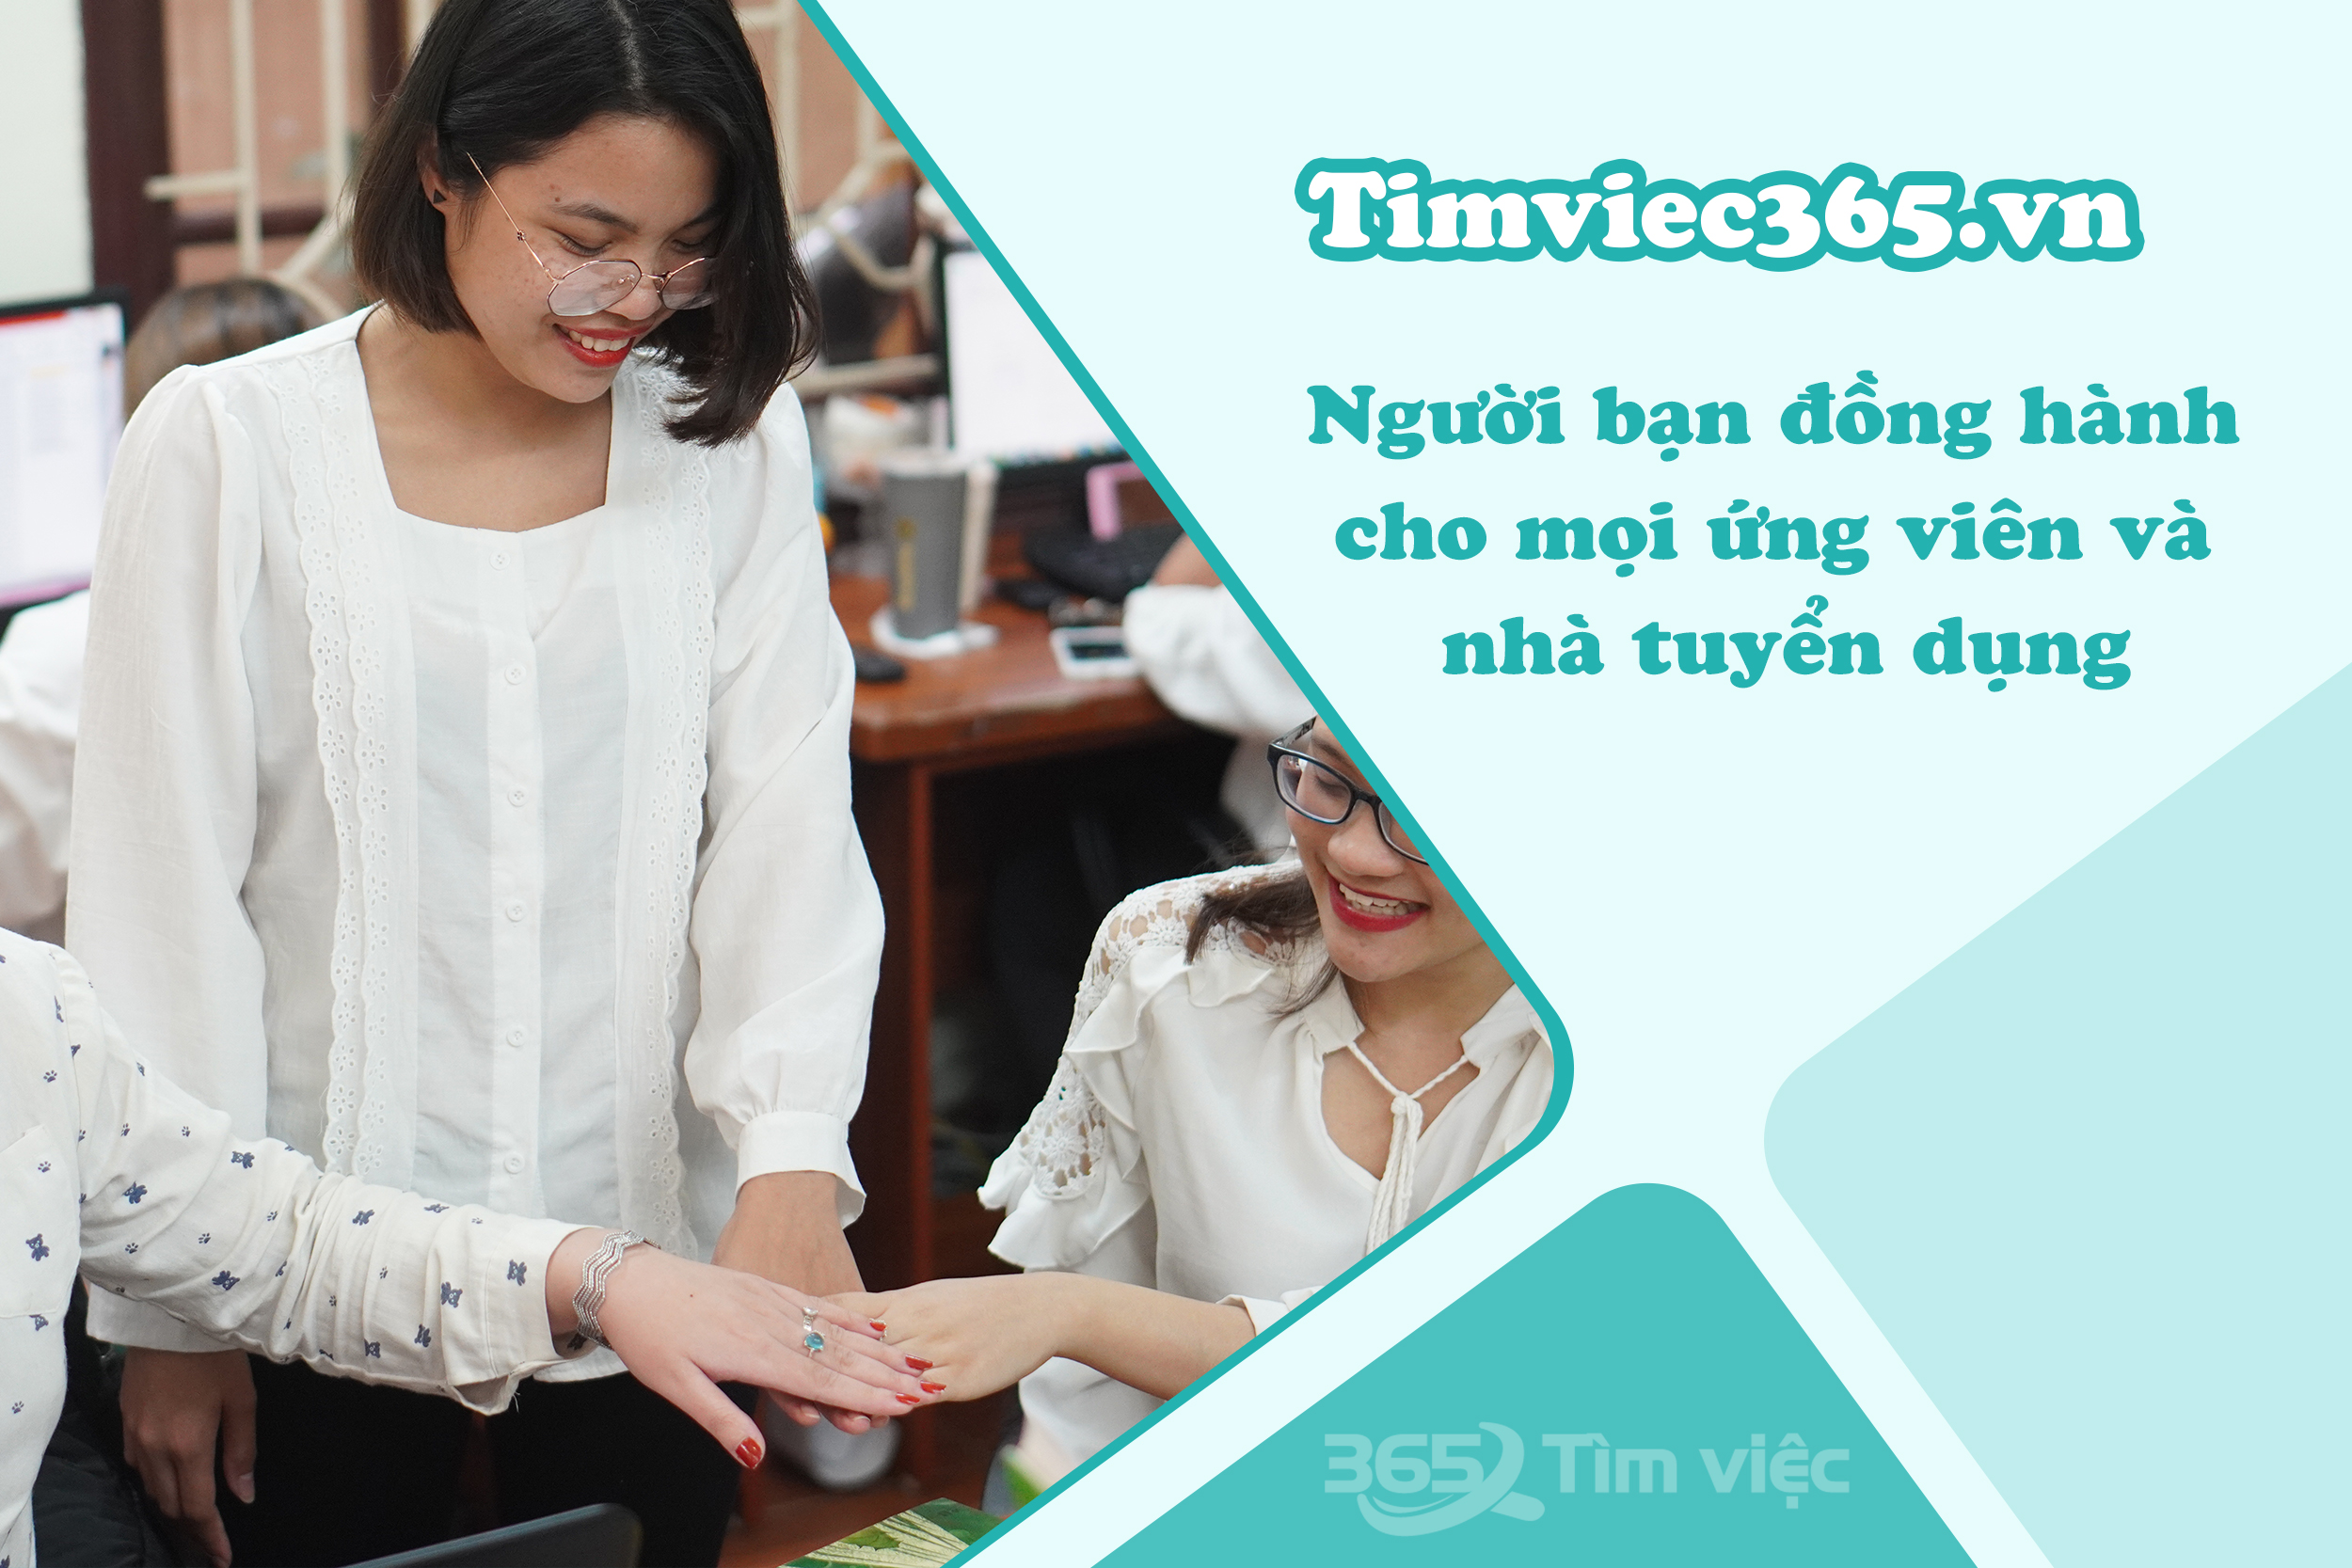 Timviec365.vn -  cầu nối đưa bạn đến cơ hội việc làm Sinh viên làm thêm tại Hòa Bình trong tầm tay